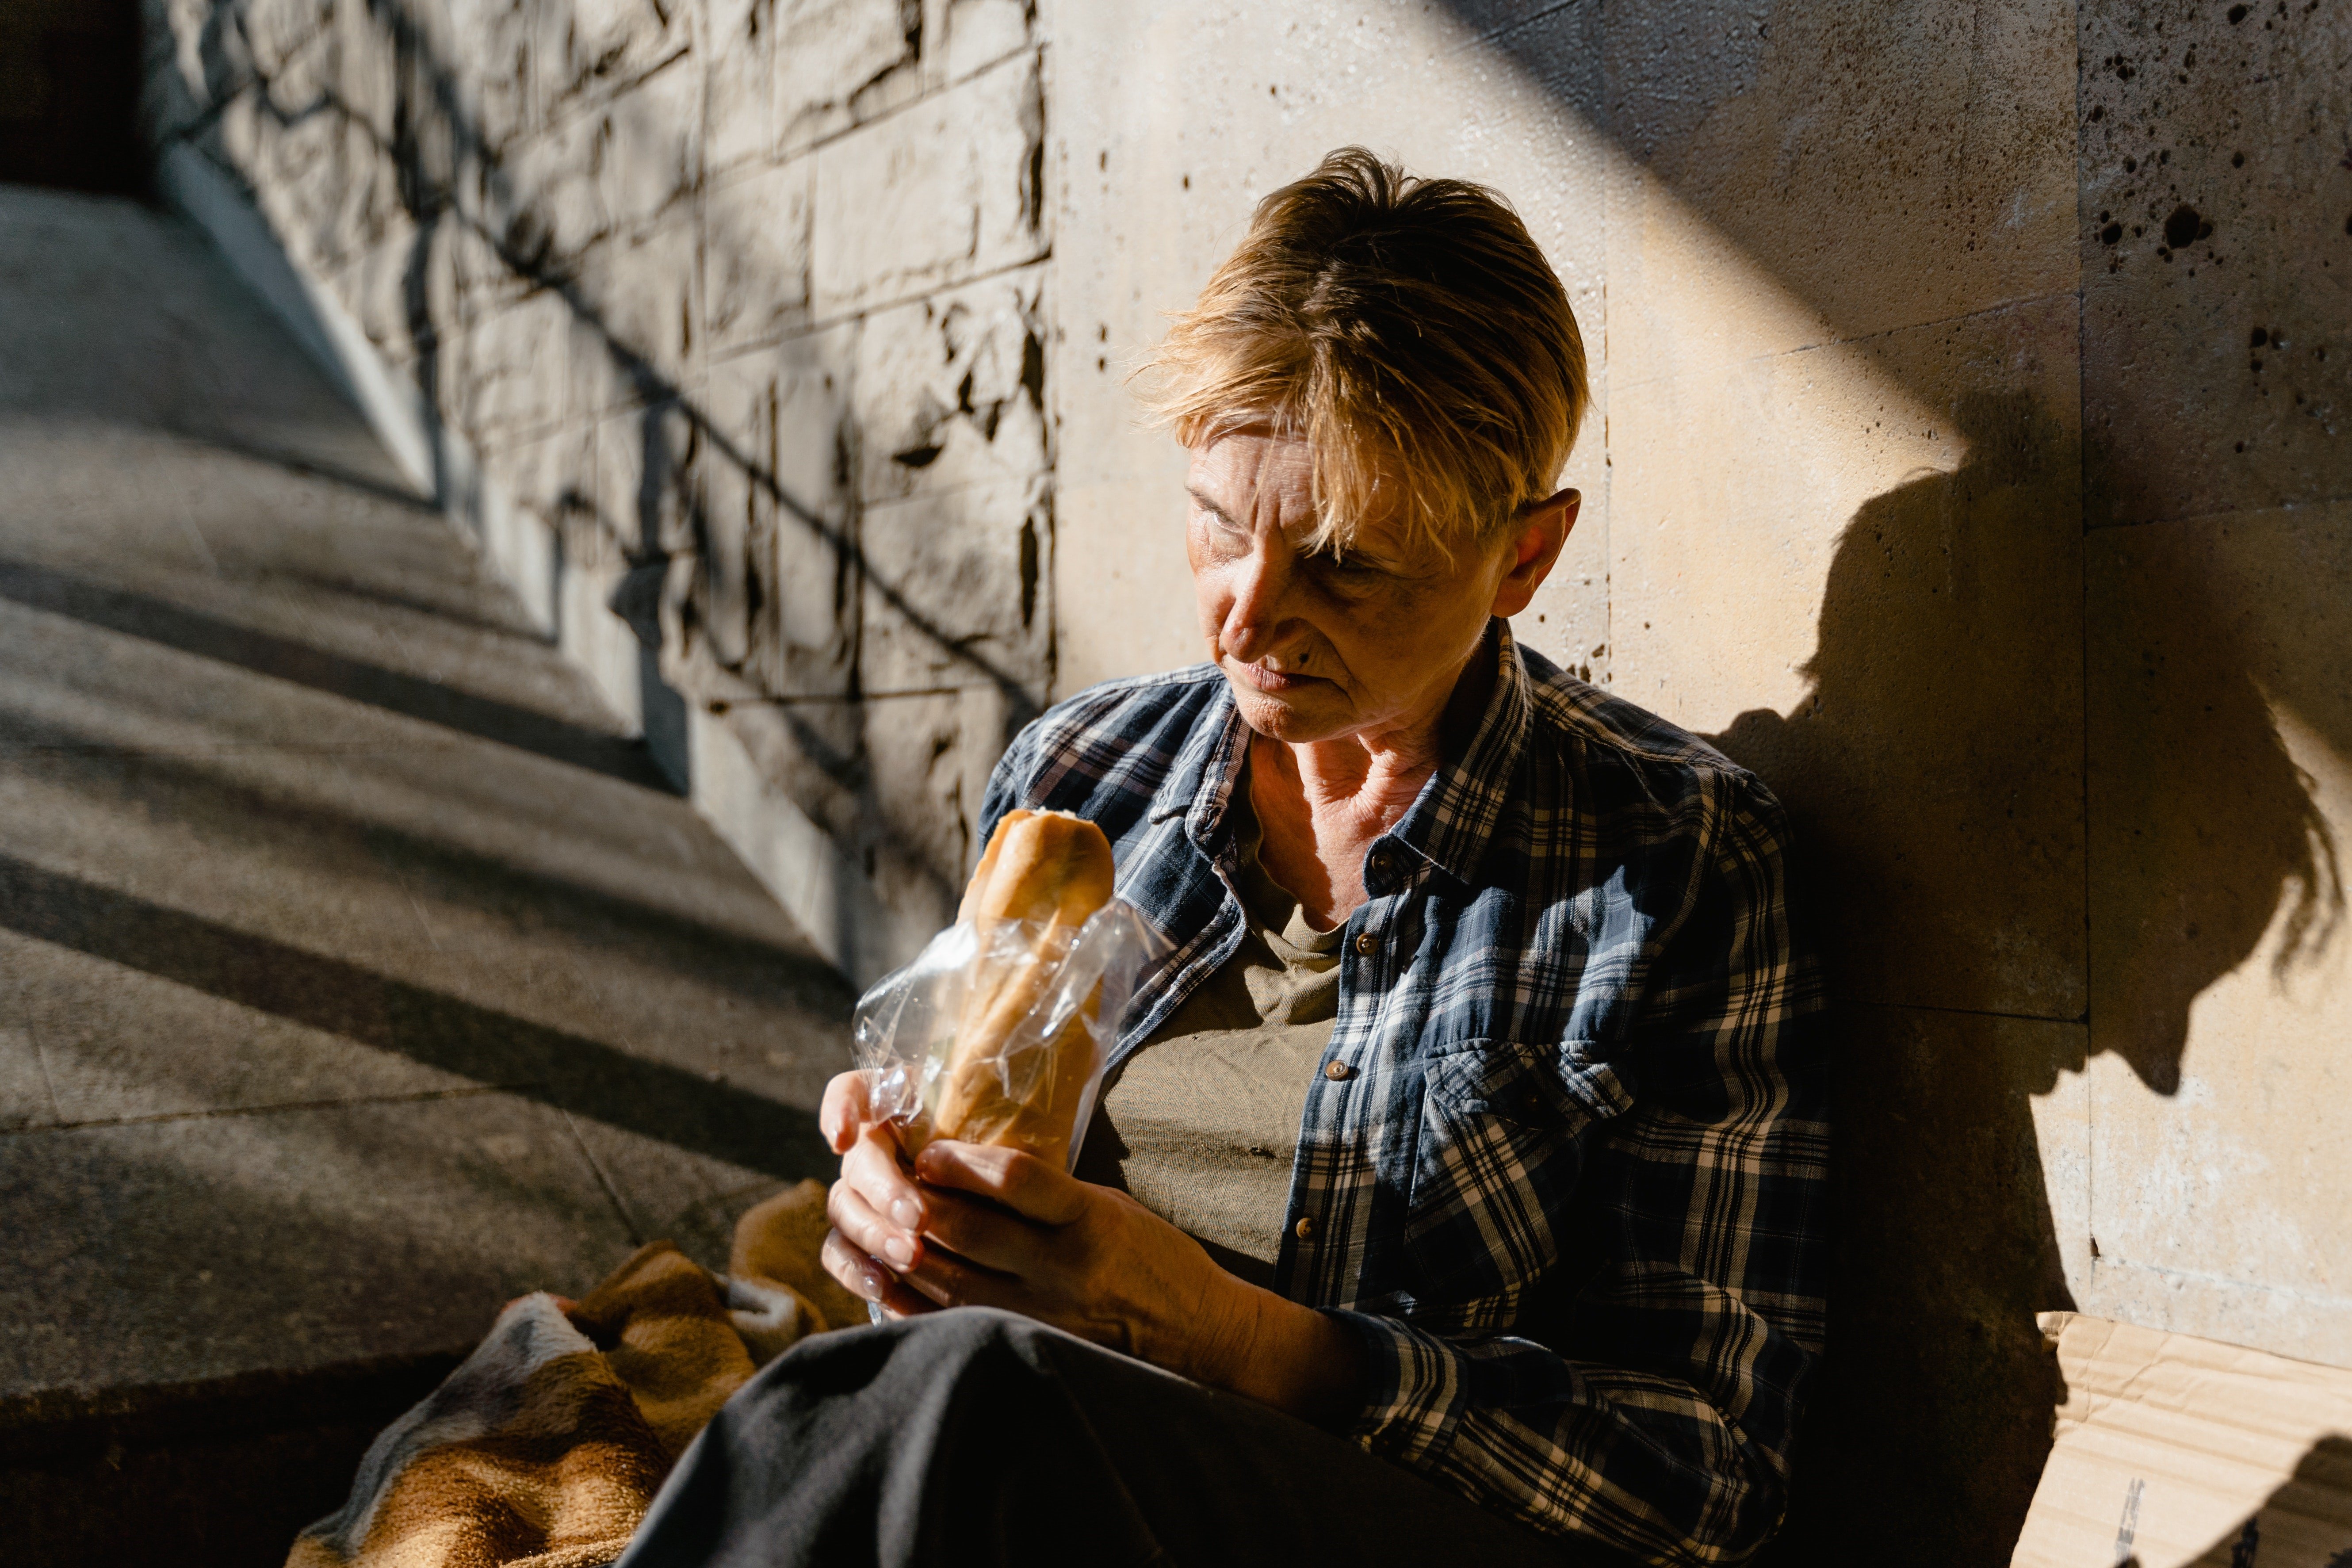 Kevin hat eine obdachlose Patricia entdeckt, die Fremde um Essen anbettelt. | Quelle: Pexels